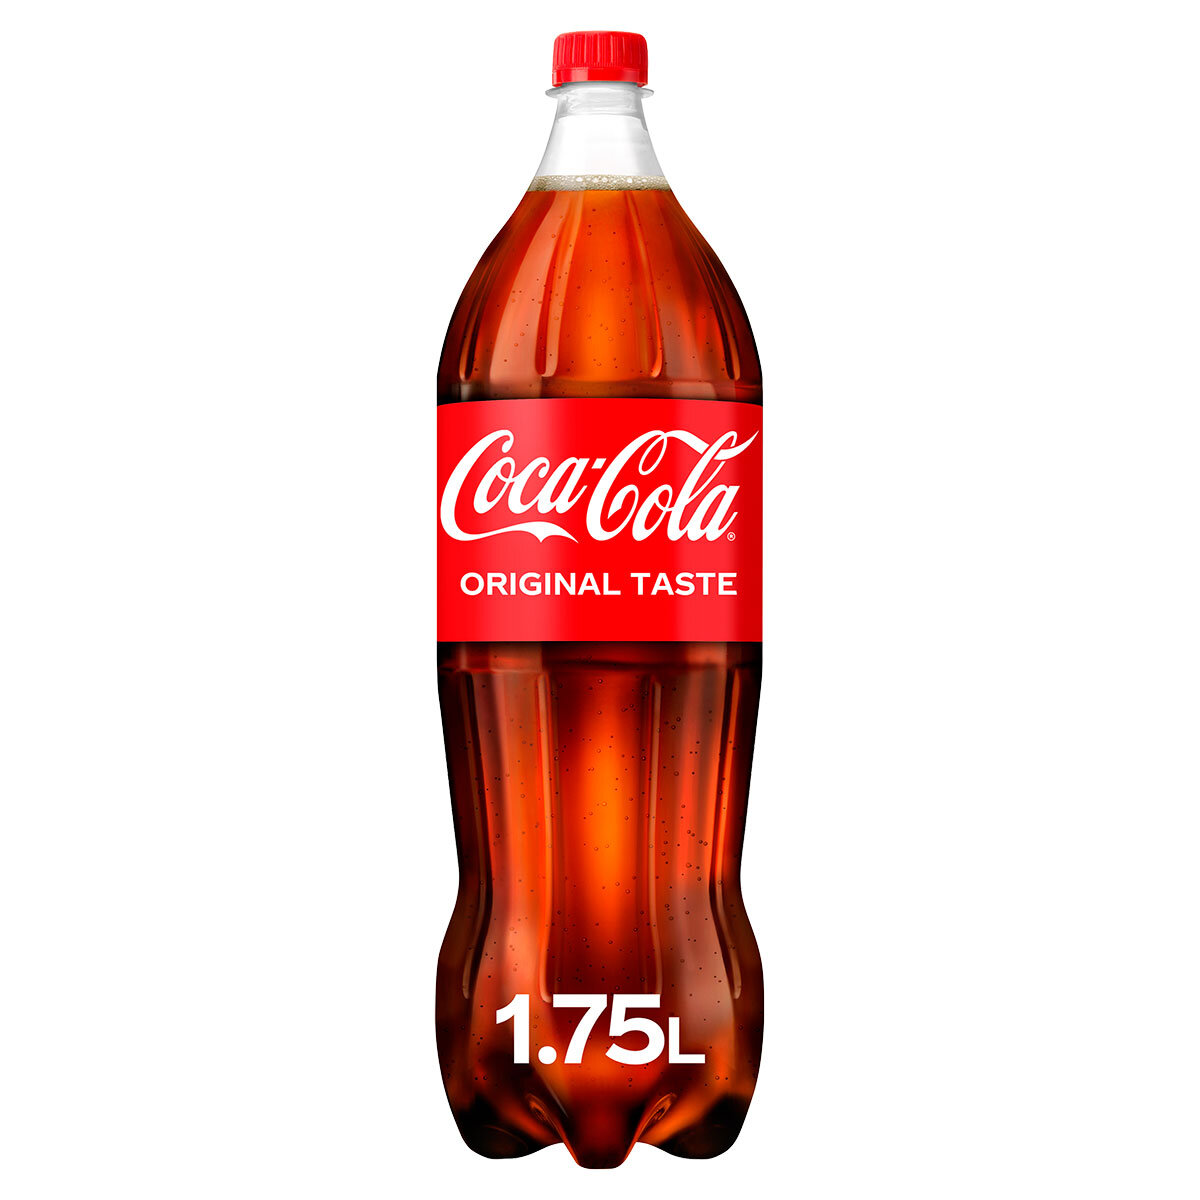 Coca Cola PMP £2.59, 1.75L